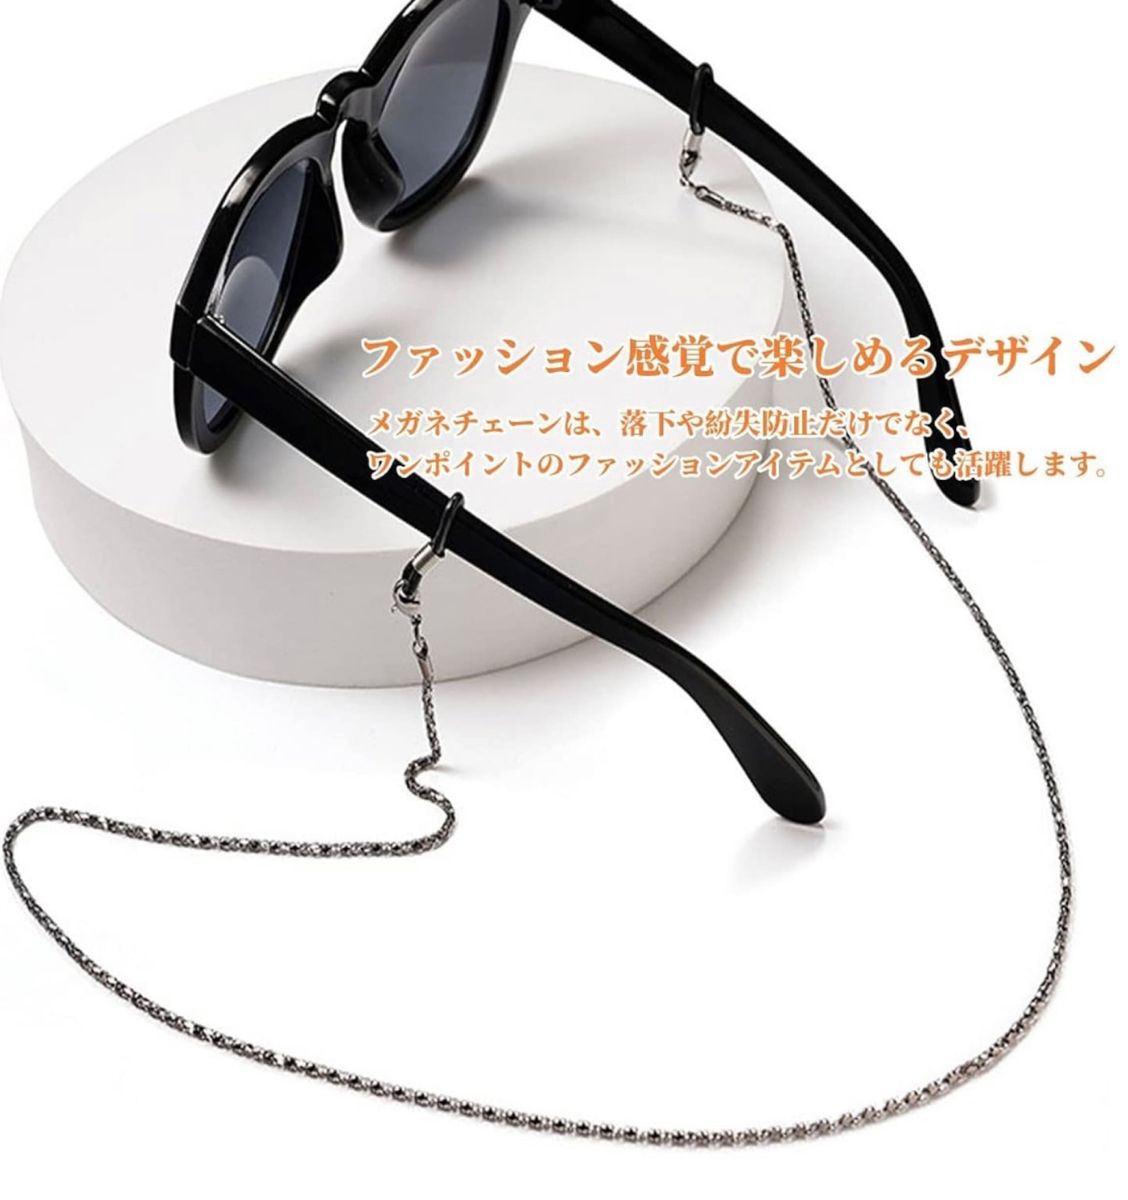 メガネチェーン マスクチェーン 眼鏡ネックレス 軽く使いやすい 便利 可愛い チェーン